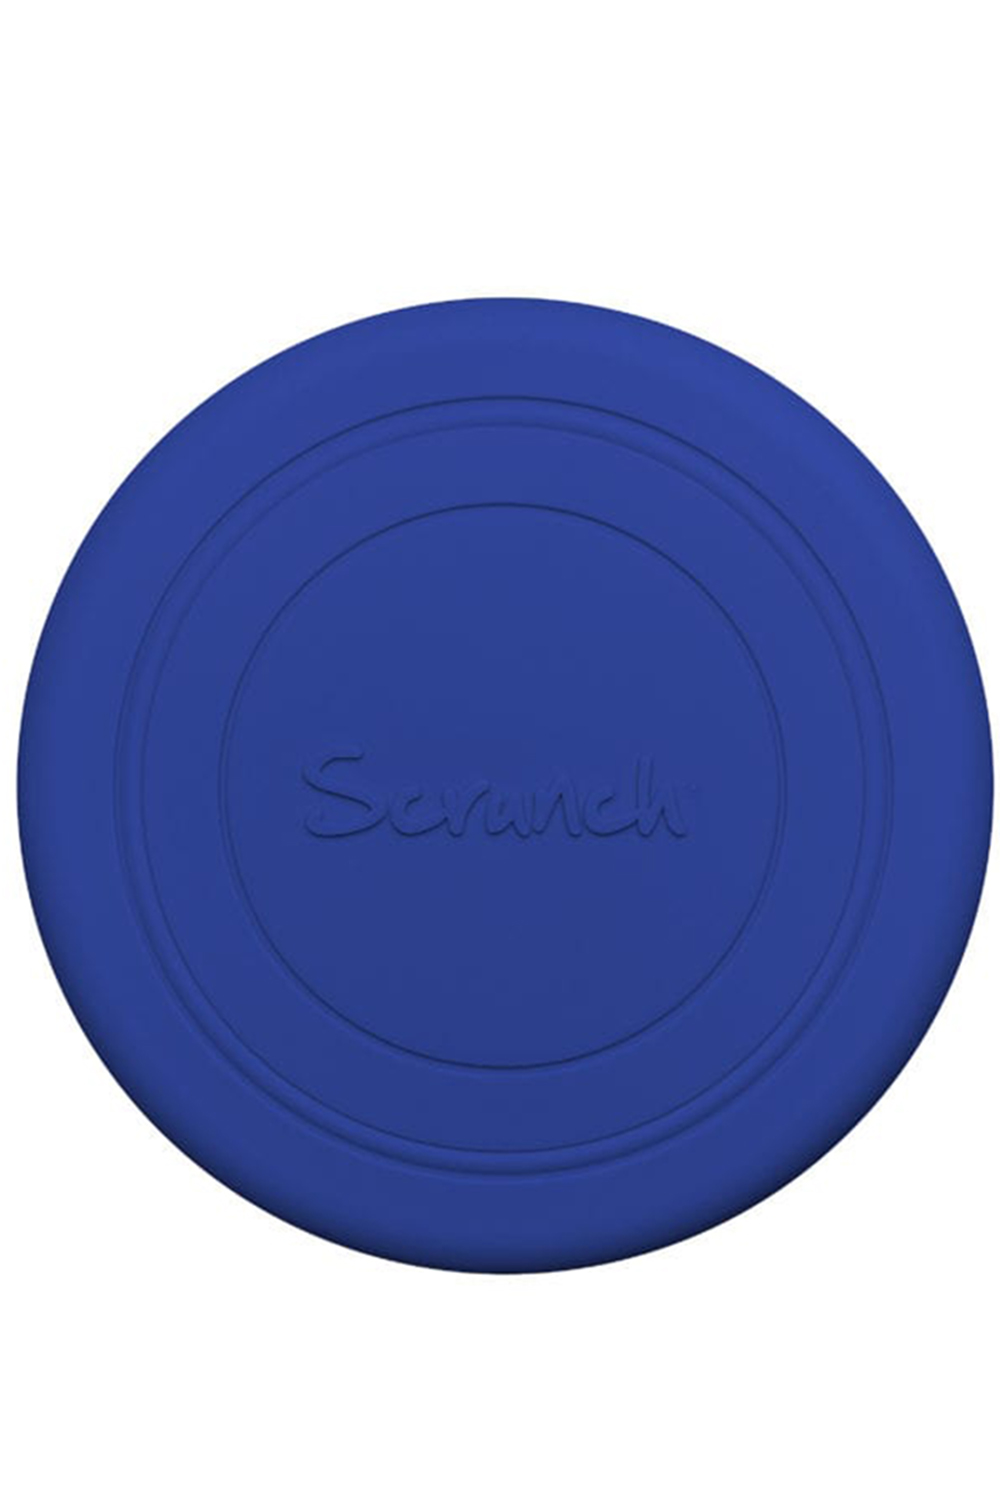 scrunch frisbee